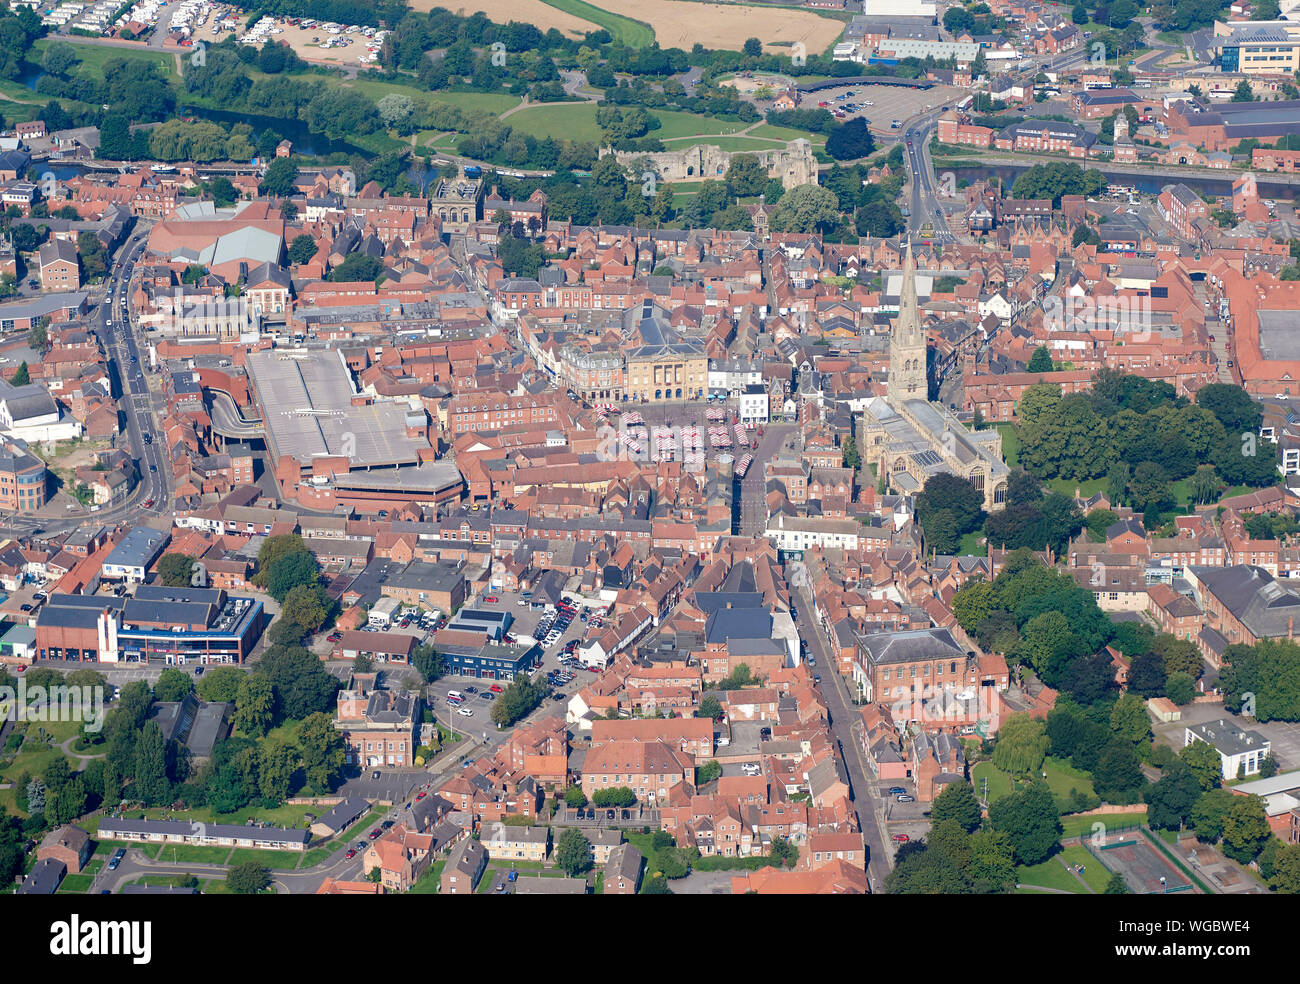 La storica città mercato di Newark on Trent, East Midlands, England, Regno Unito, dall'aria Foto Stock